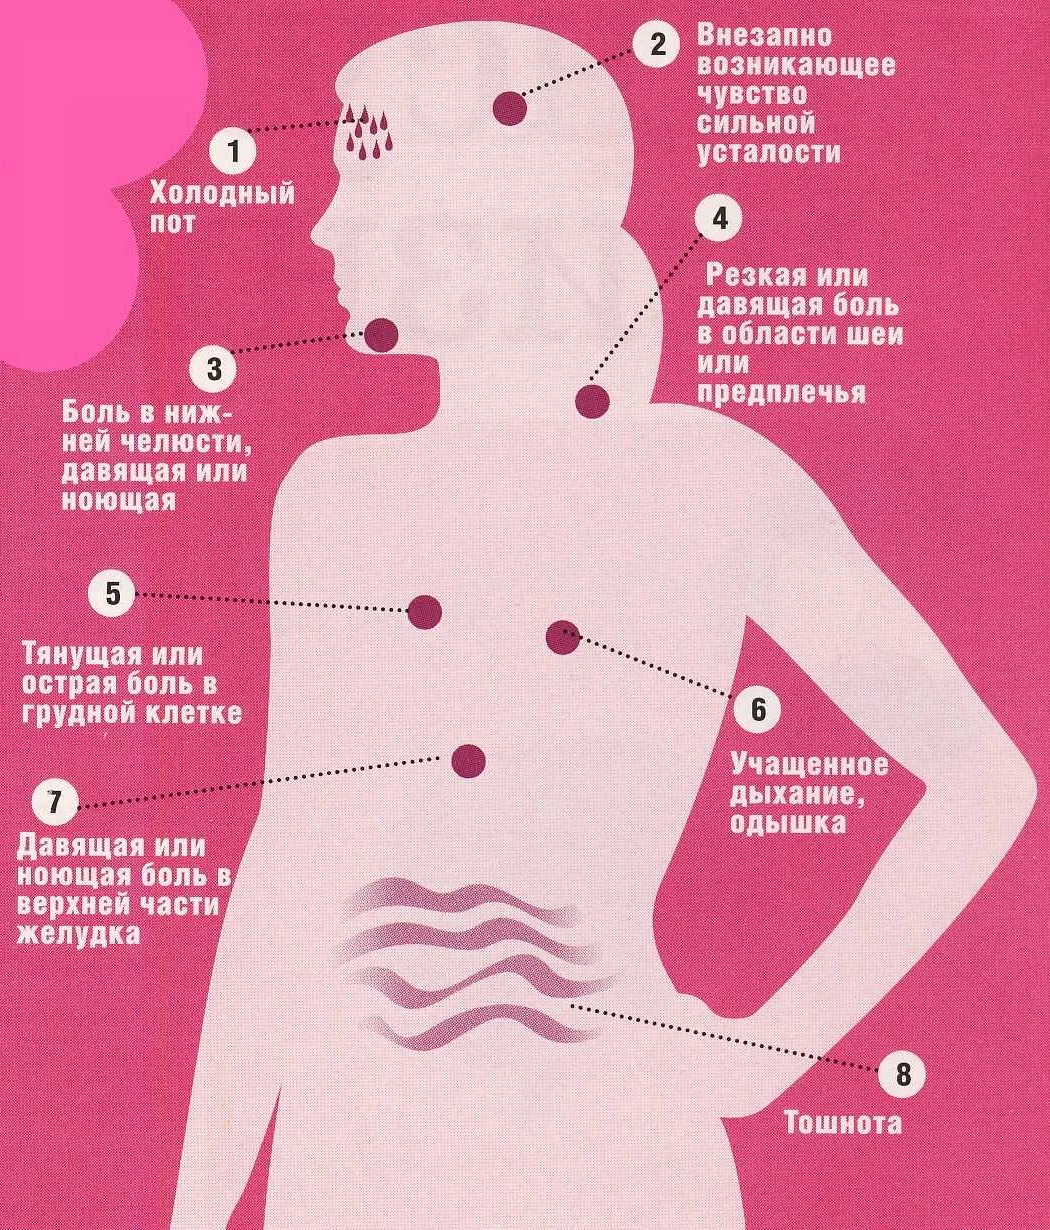 Причины и лечение болей в области груди